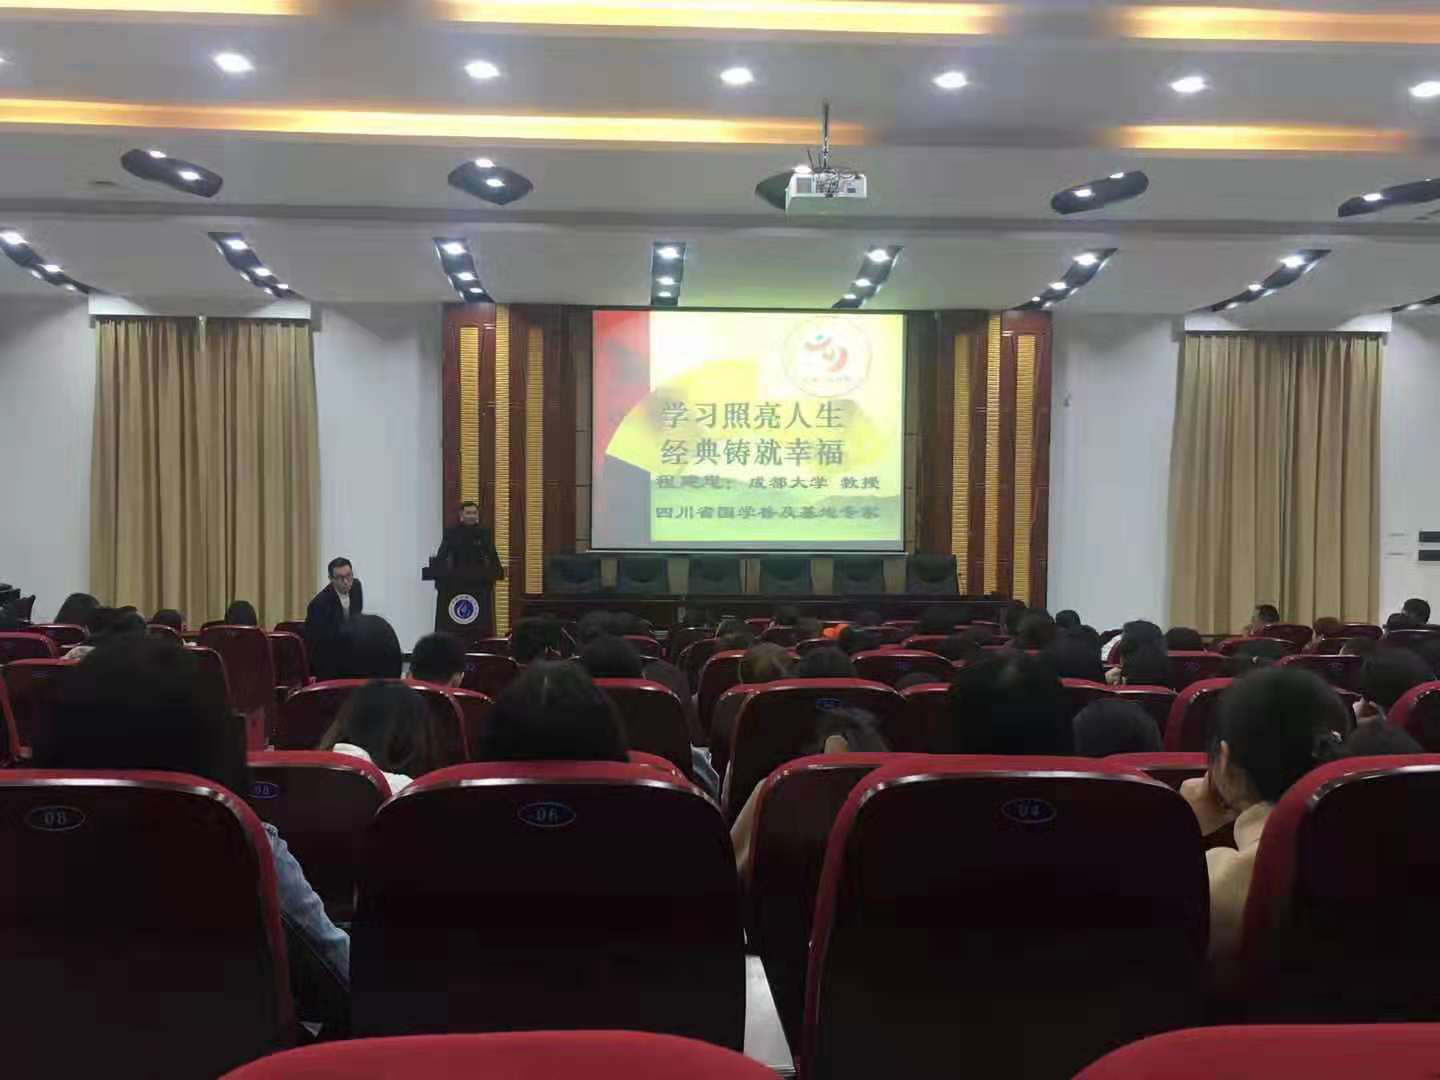 新时代讲习所之国学讲堂在广安职业技术学院举行